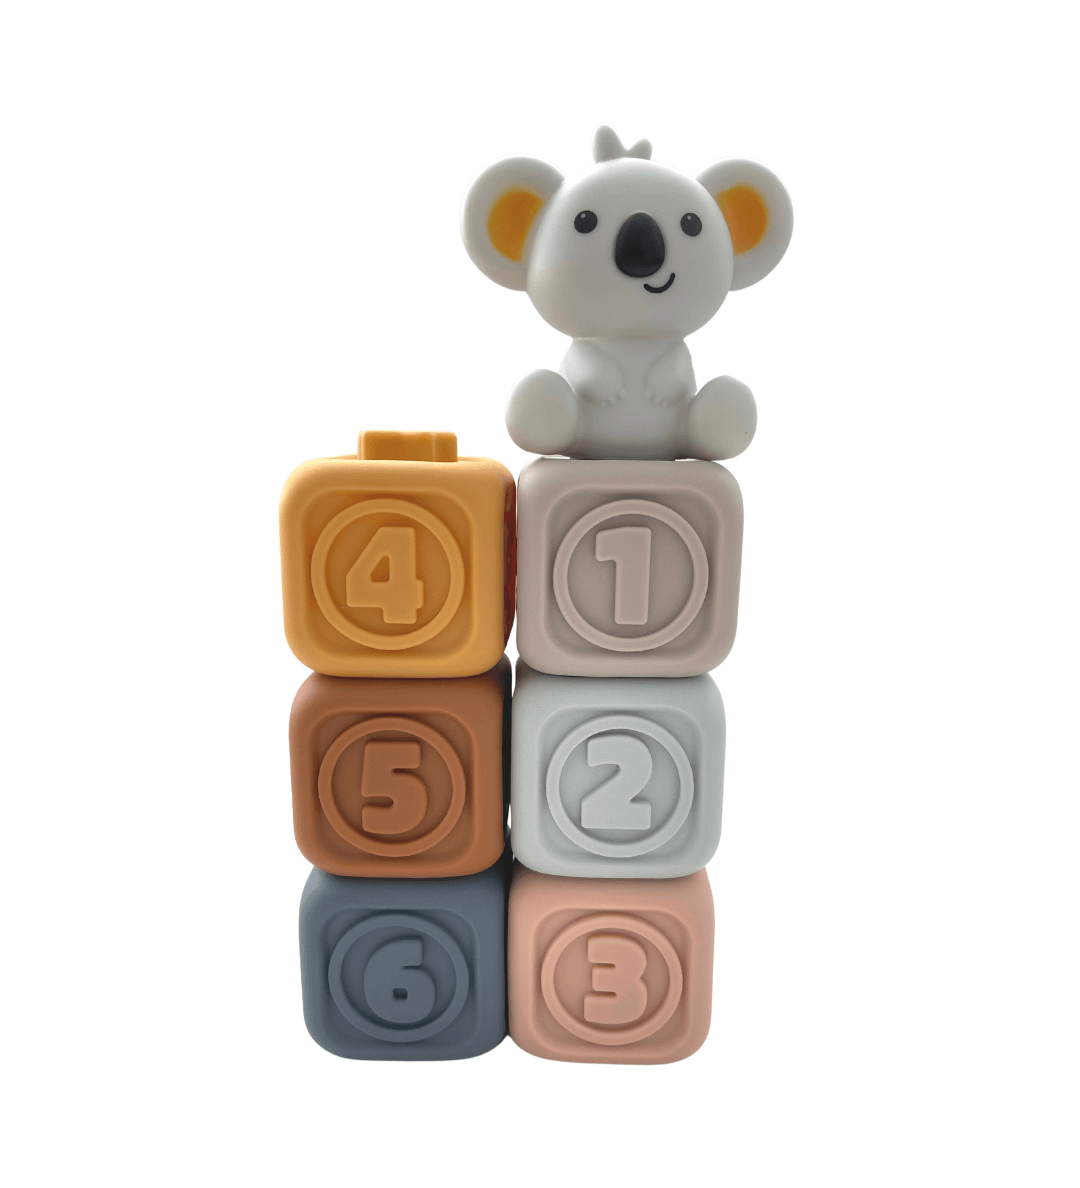 Koko Speelblokken set uitgespreid, toont verscheidenheid aan kleuren en patronen.